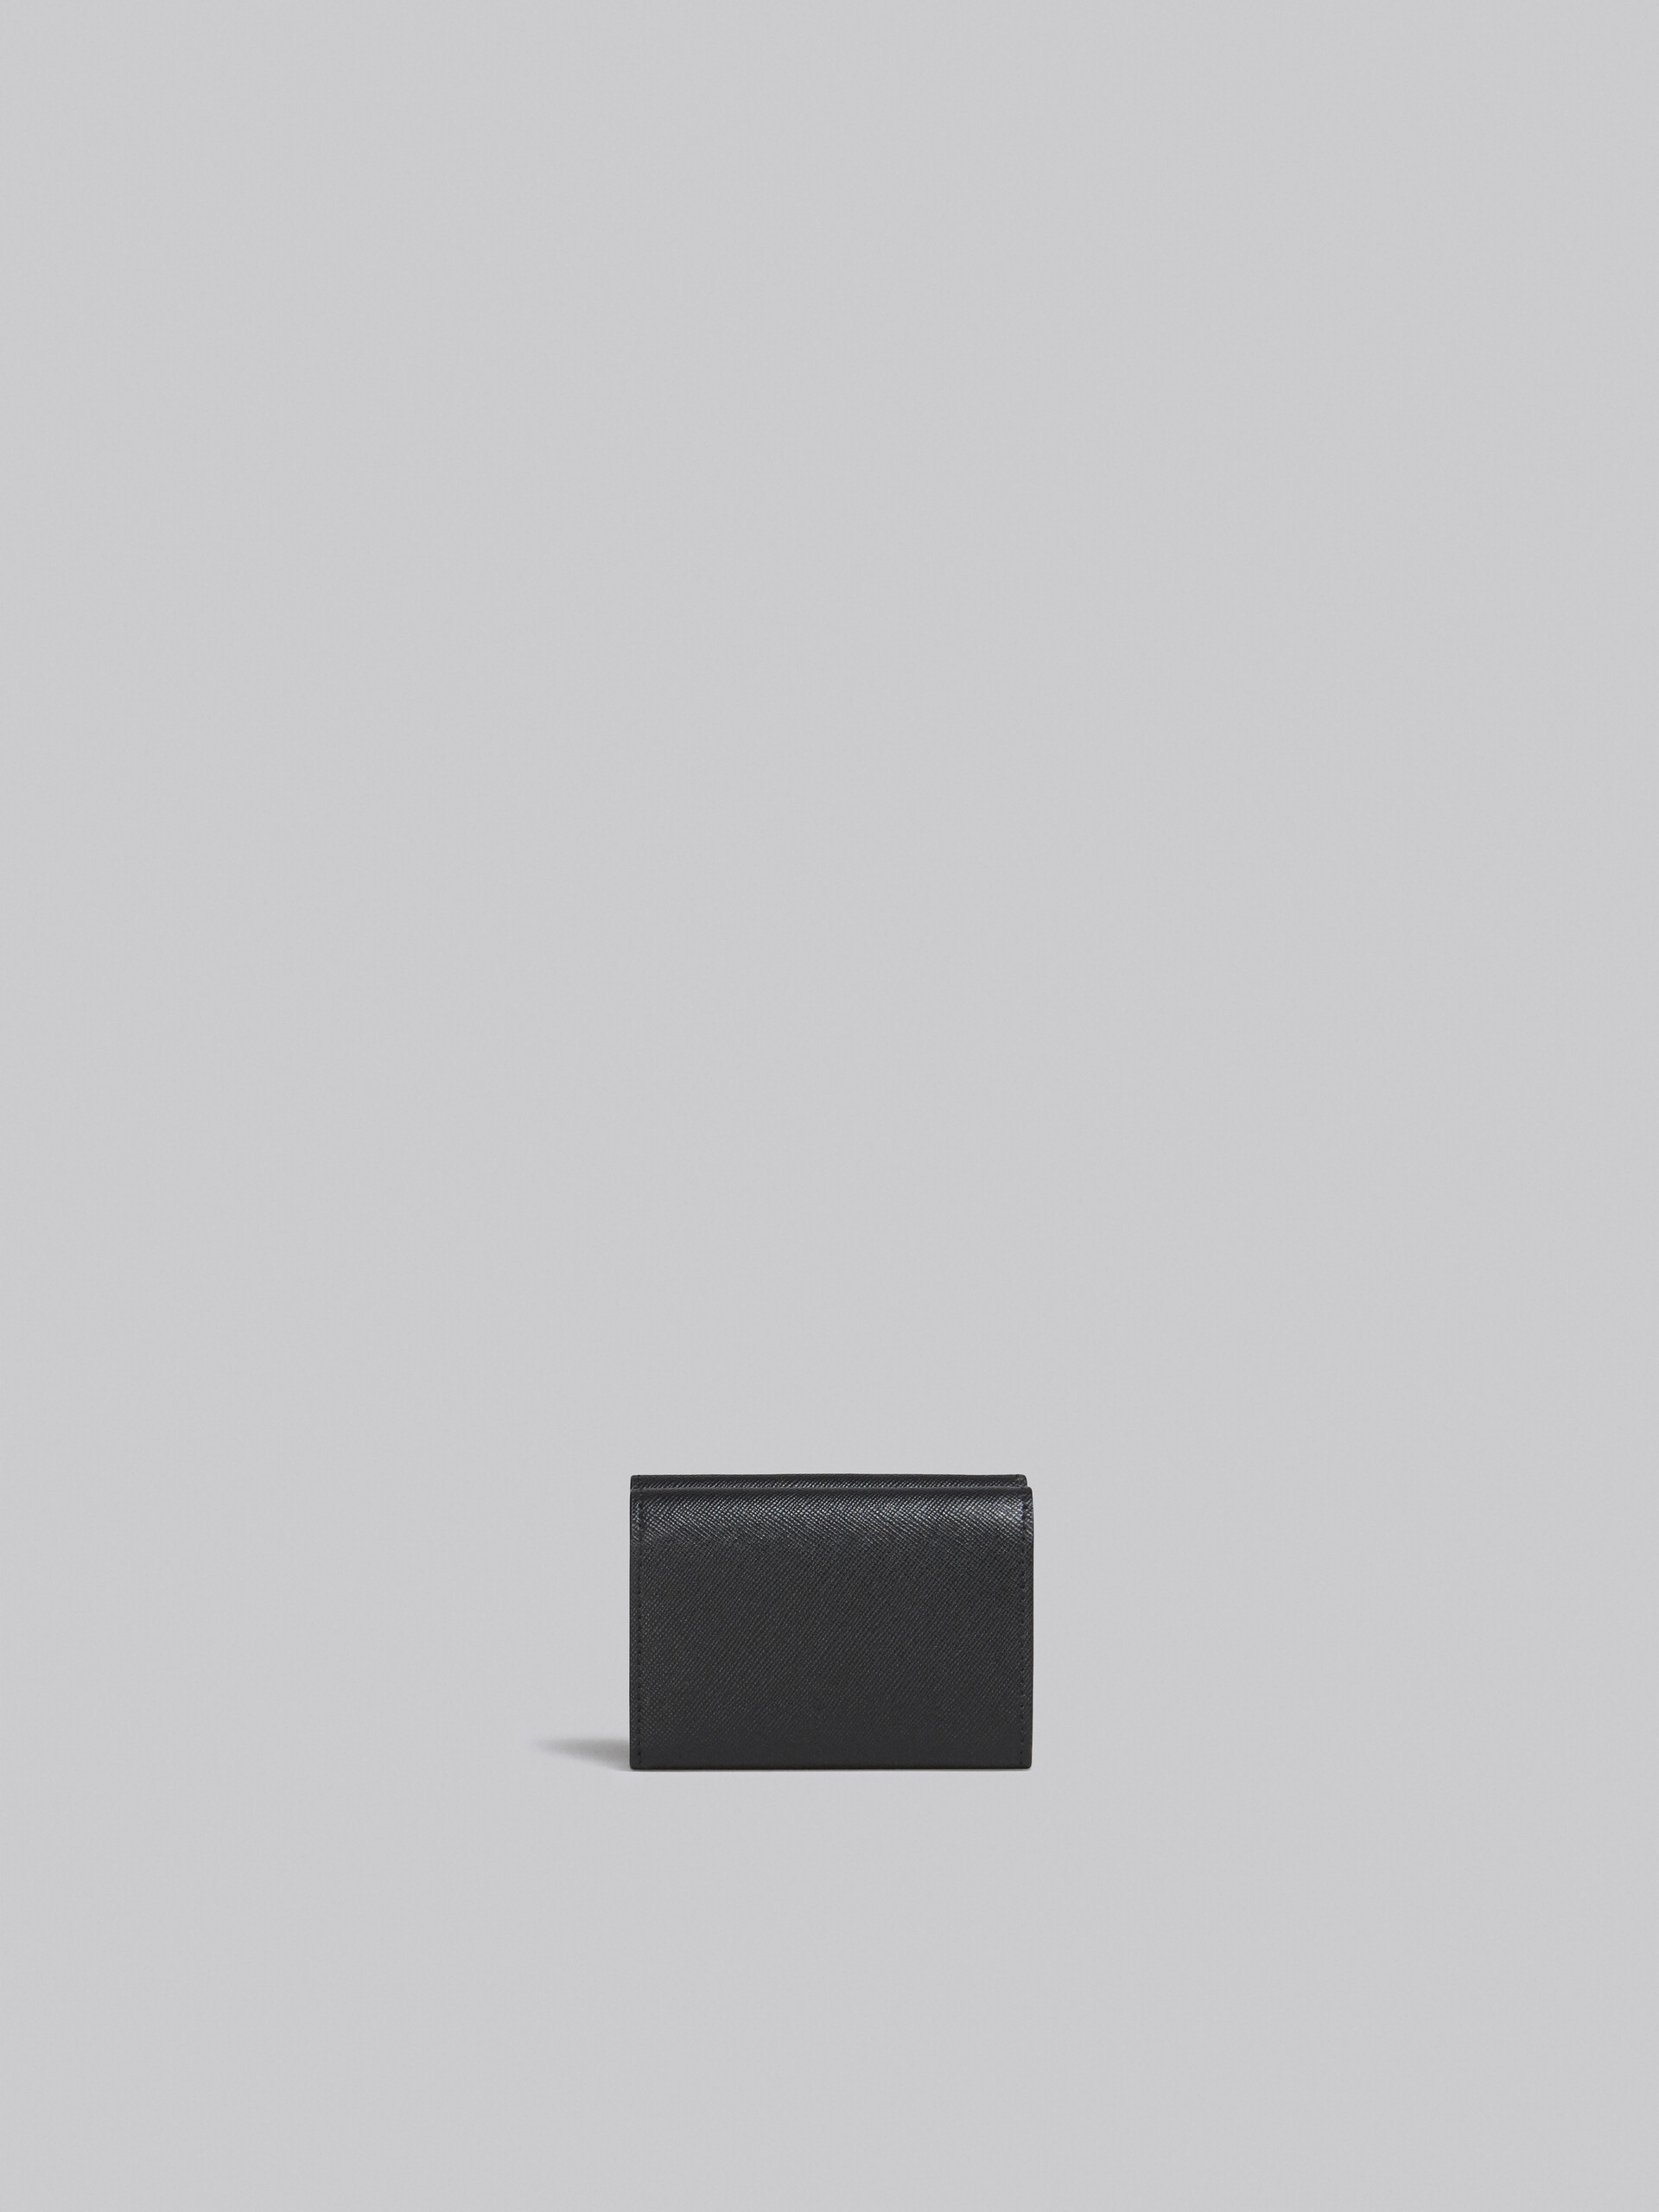 サフィアーノレザー ブラック 三つ折りウォレット - 財布 - Image 3